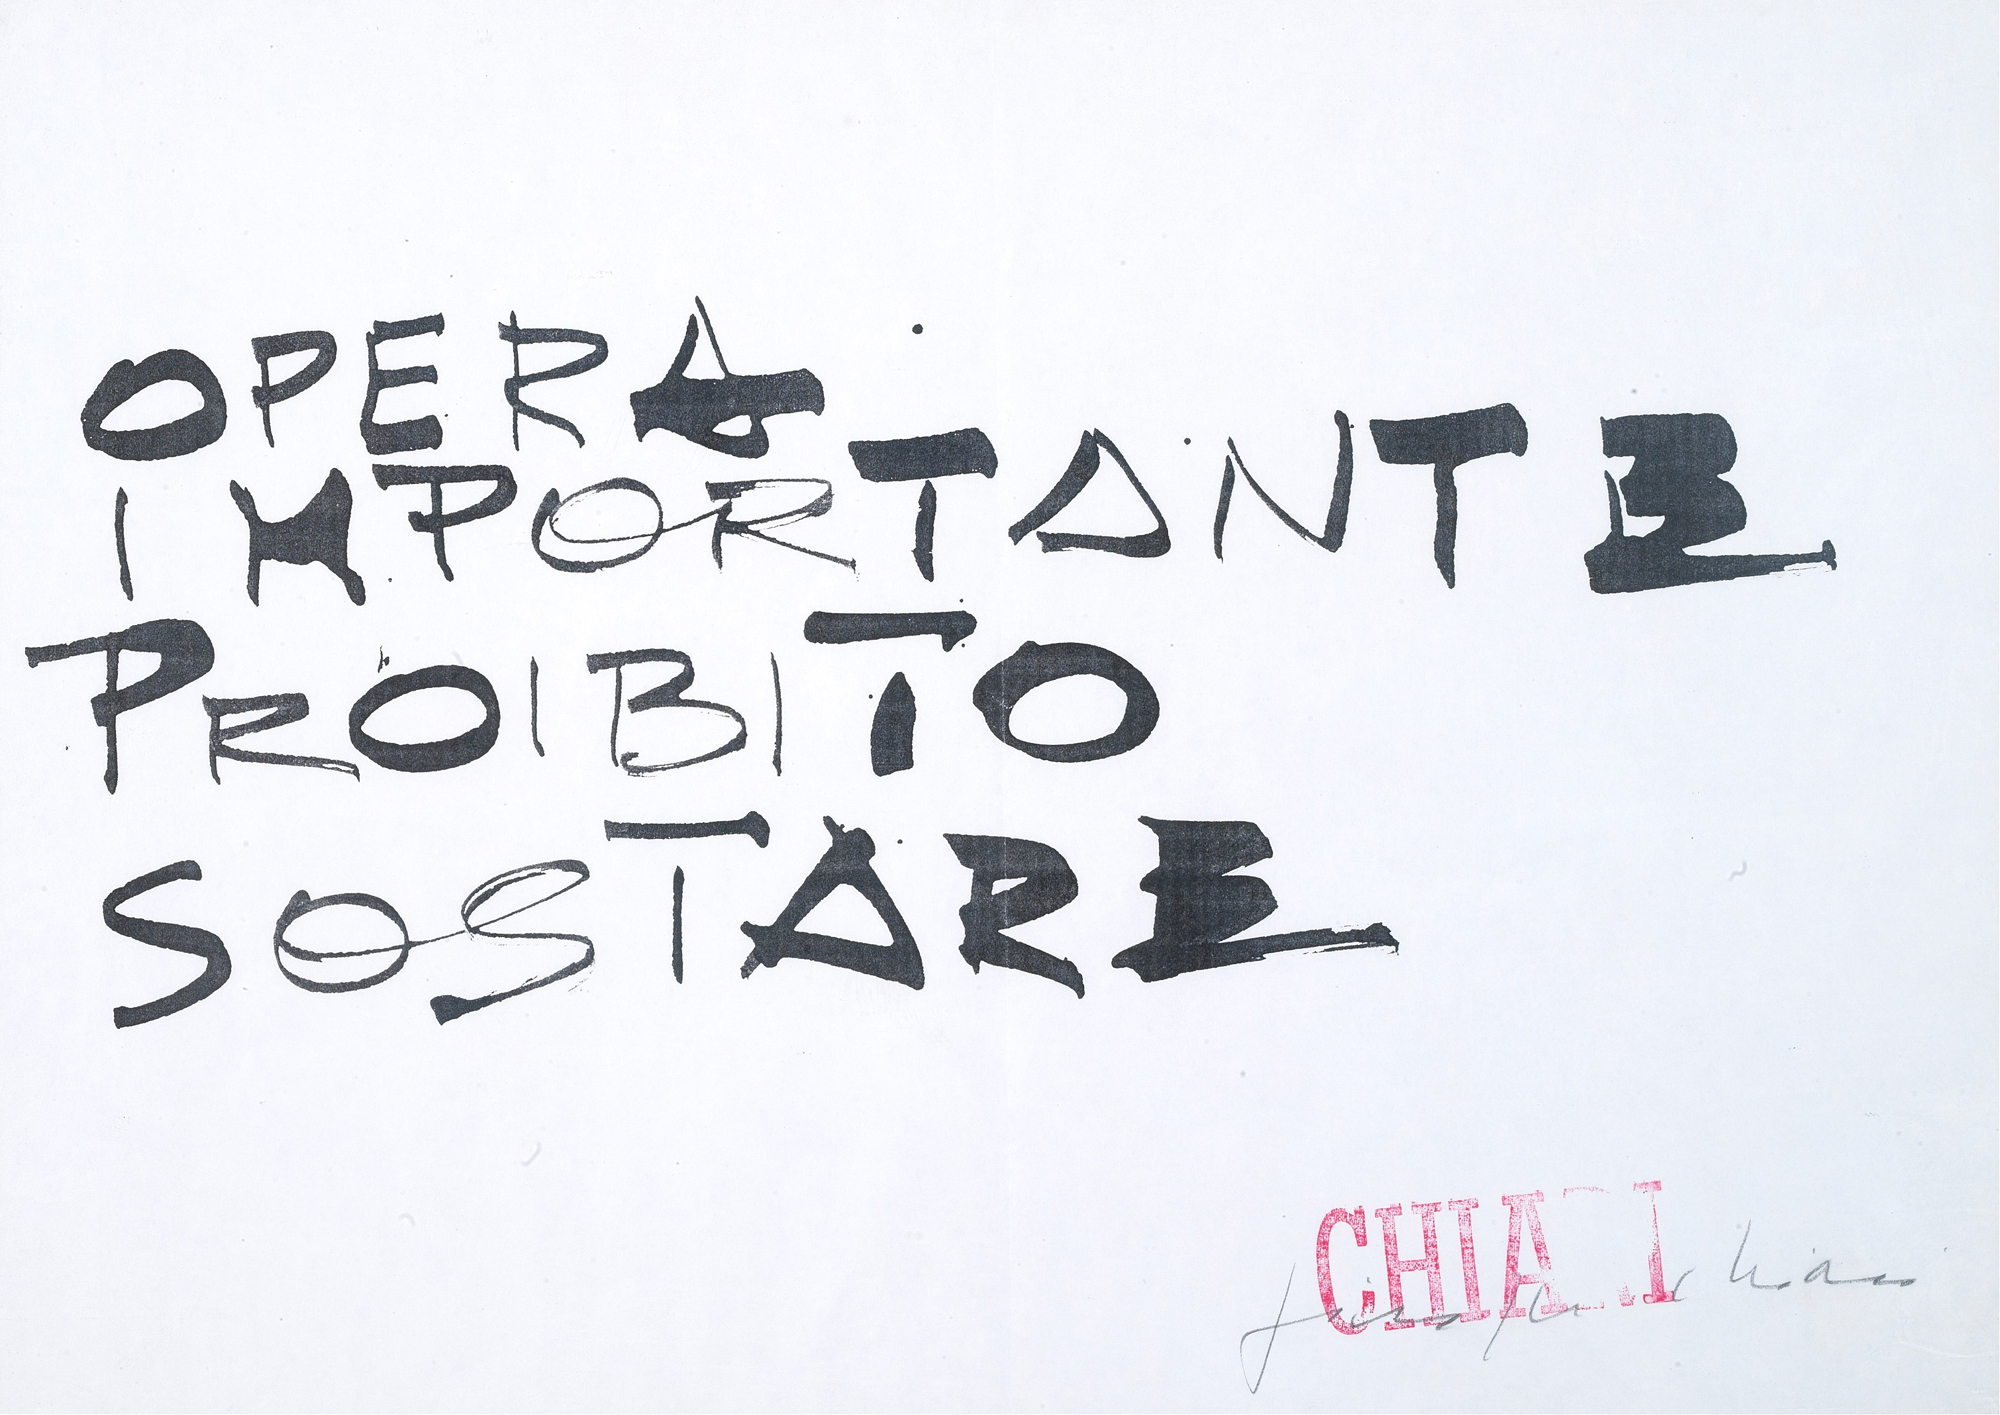 Giuseppe Chiari, ‘Opera importante,’ 1990, Inchiostro su carta, cm 30 x 42, Courtesy Tornabuoni Art